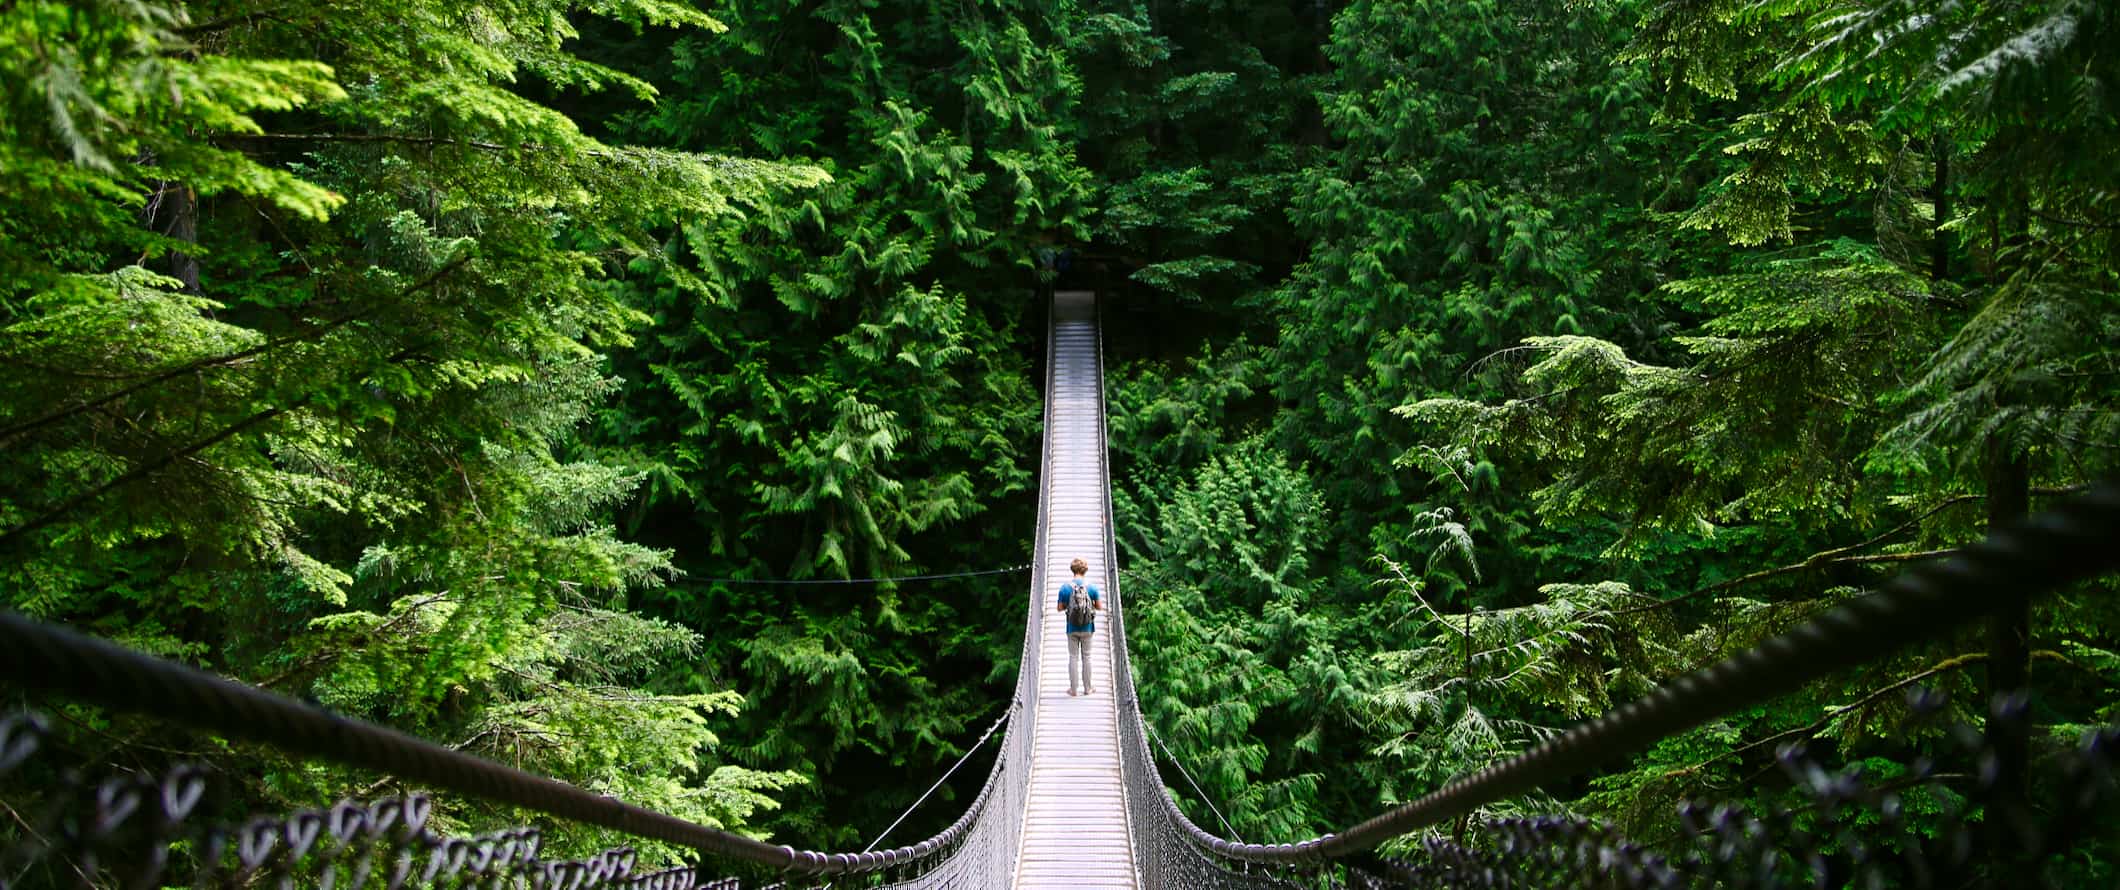 Um viajante solitário atravessa a famosa ponte de suspensão de Kapilano, na floresta, perto de Vancouver, Canadá